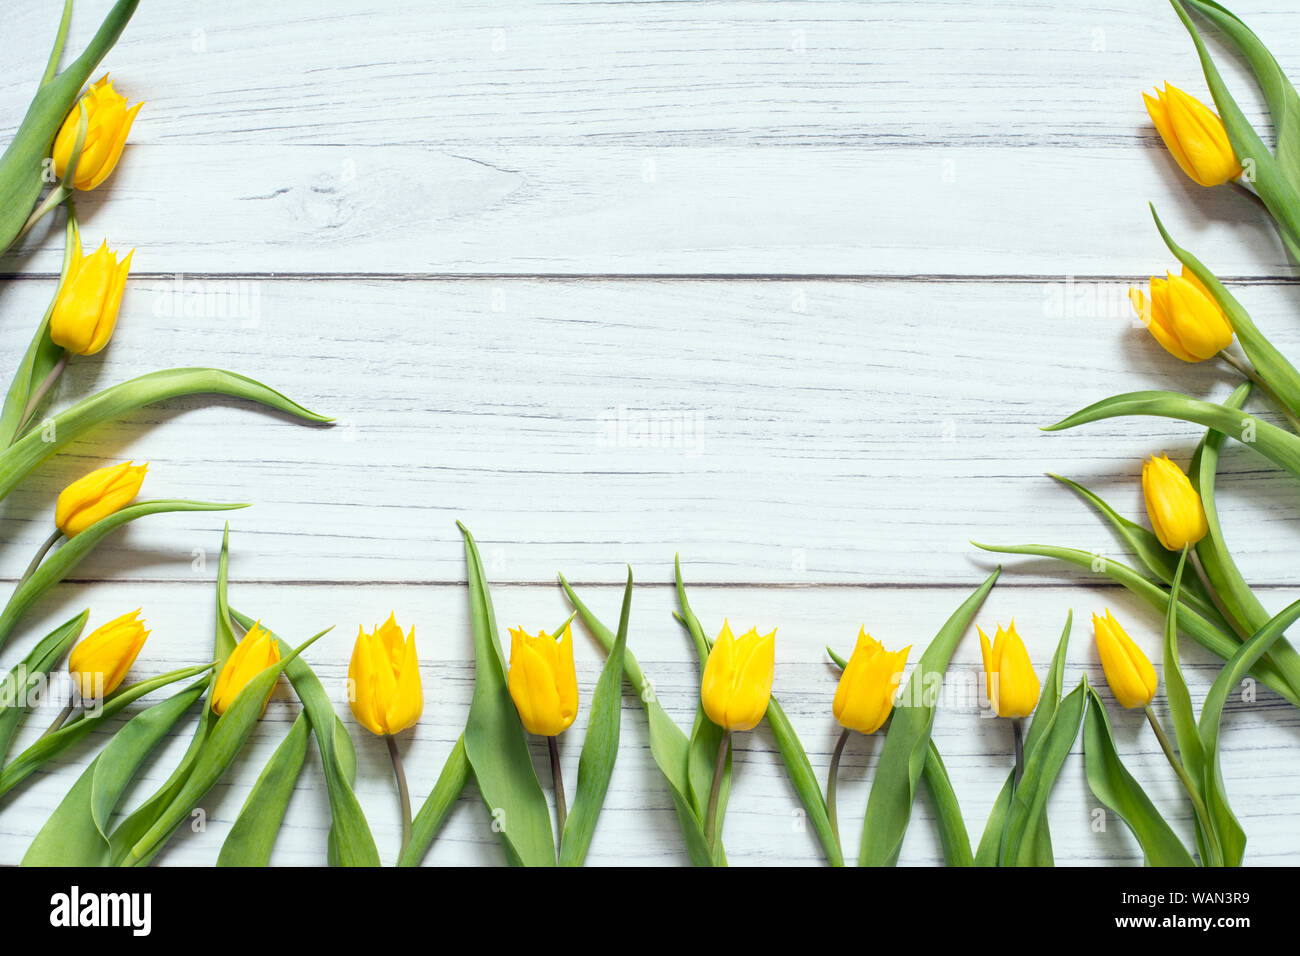 Feder Grenze mit gelben Tulpen auf drei Seiten von weißen Holz- Hintergrund angeordnet Stockfoto